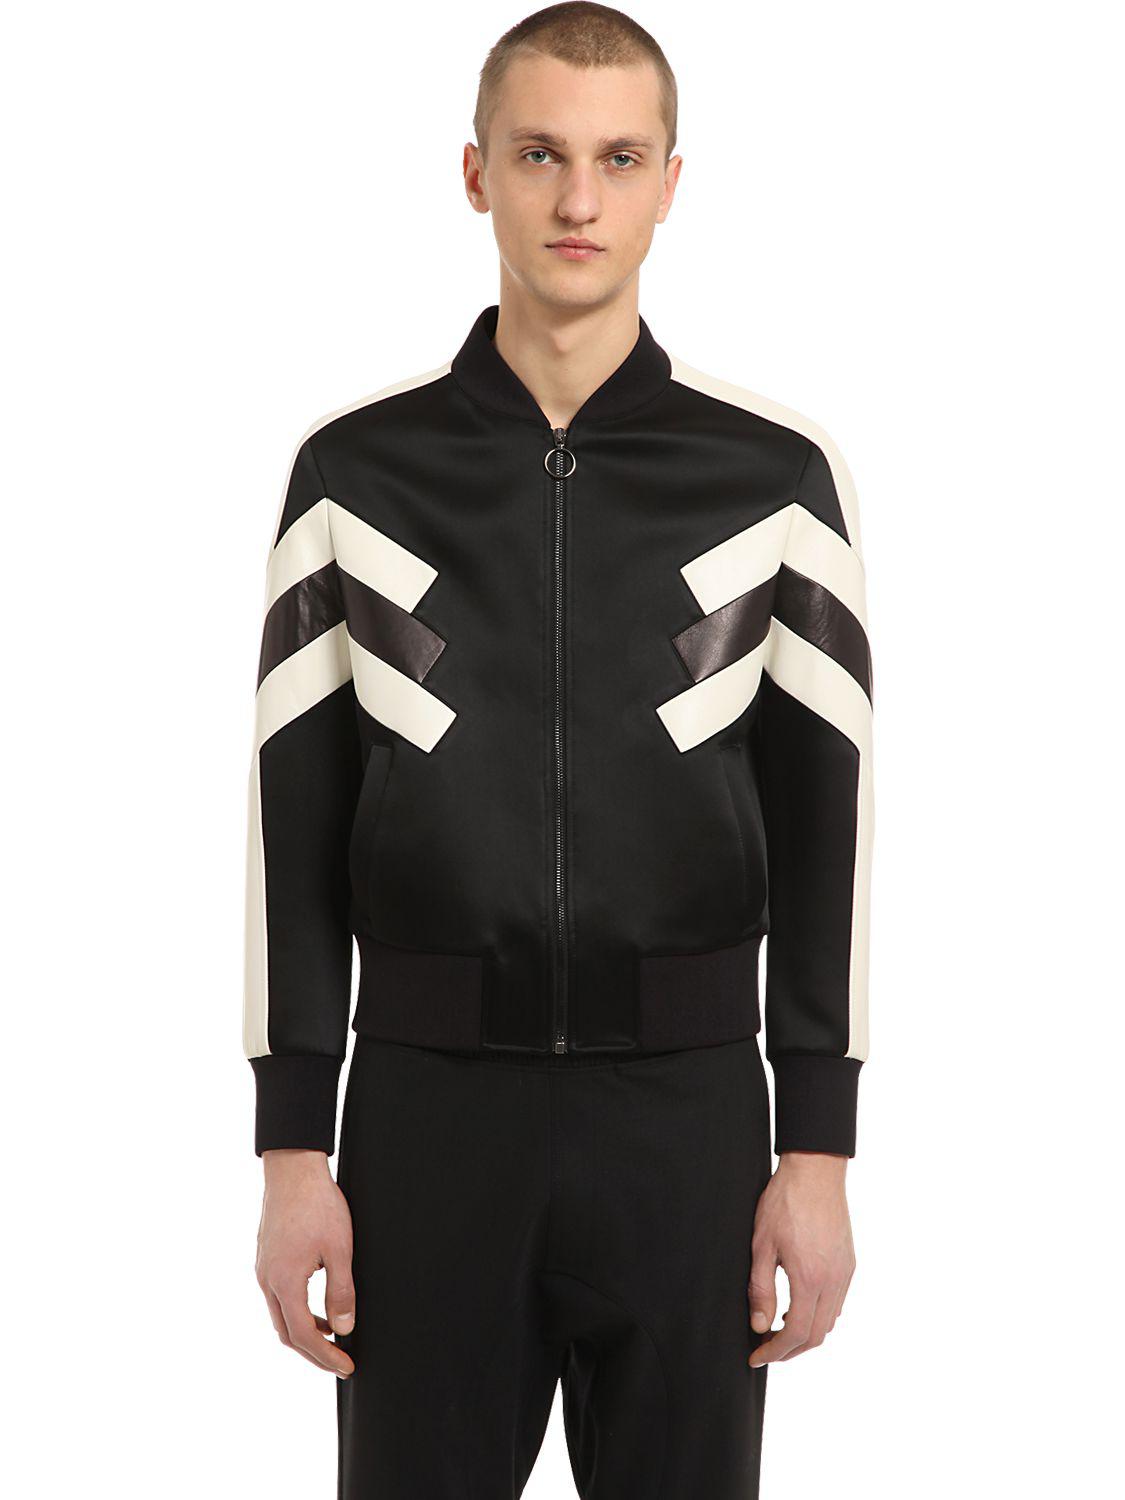 Lyst - Neil Barrett Patchwork Nylon & Leather Jacket in Black for Men